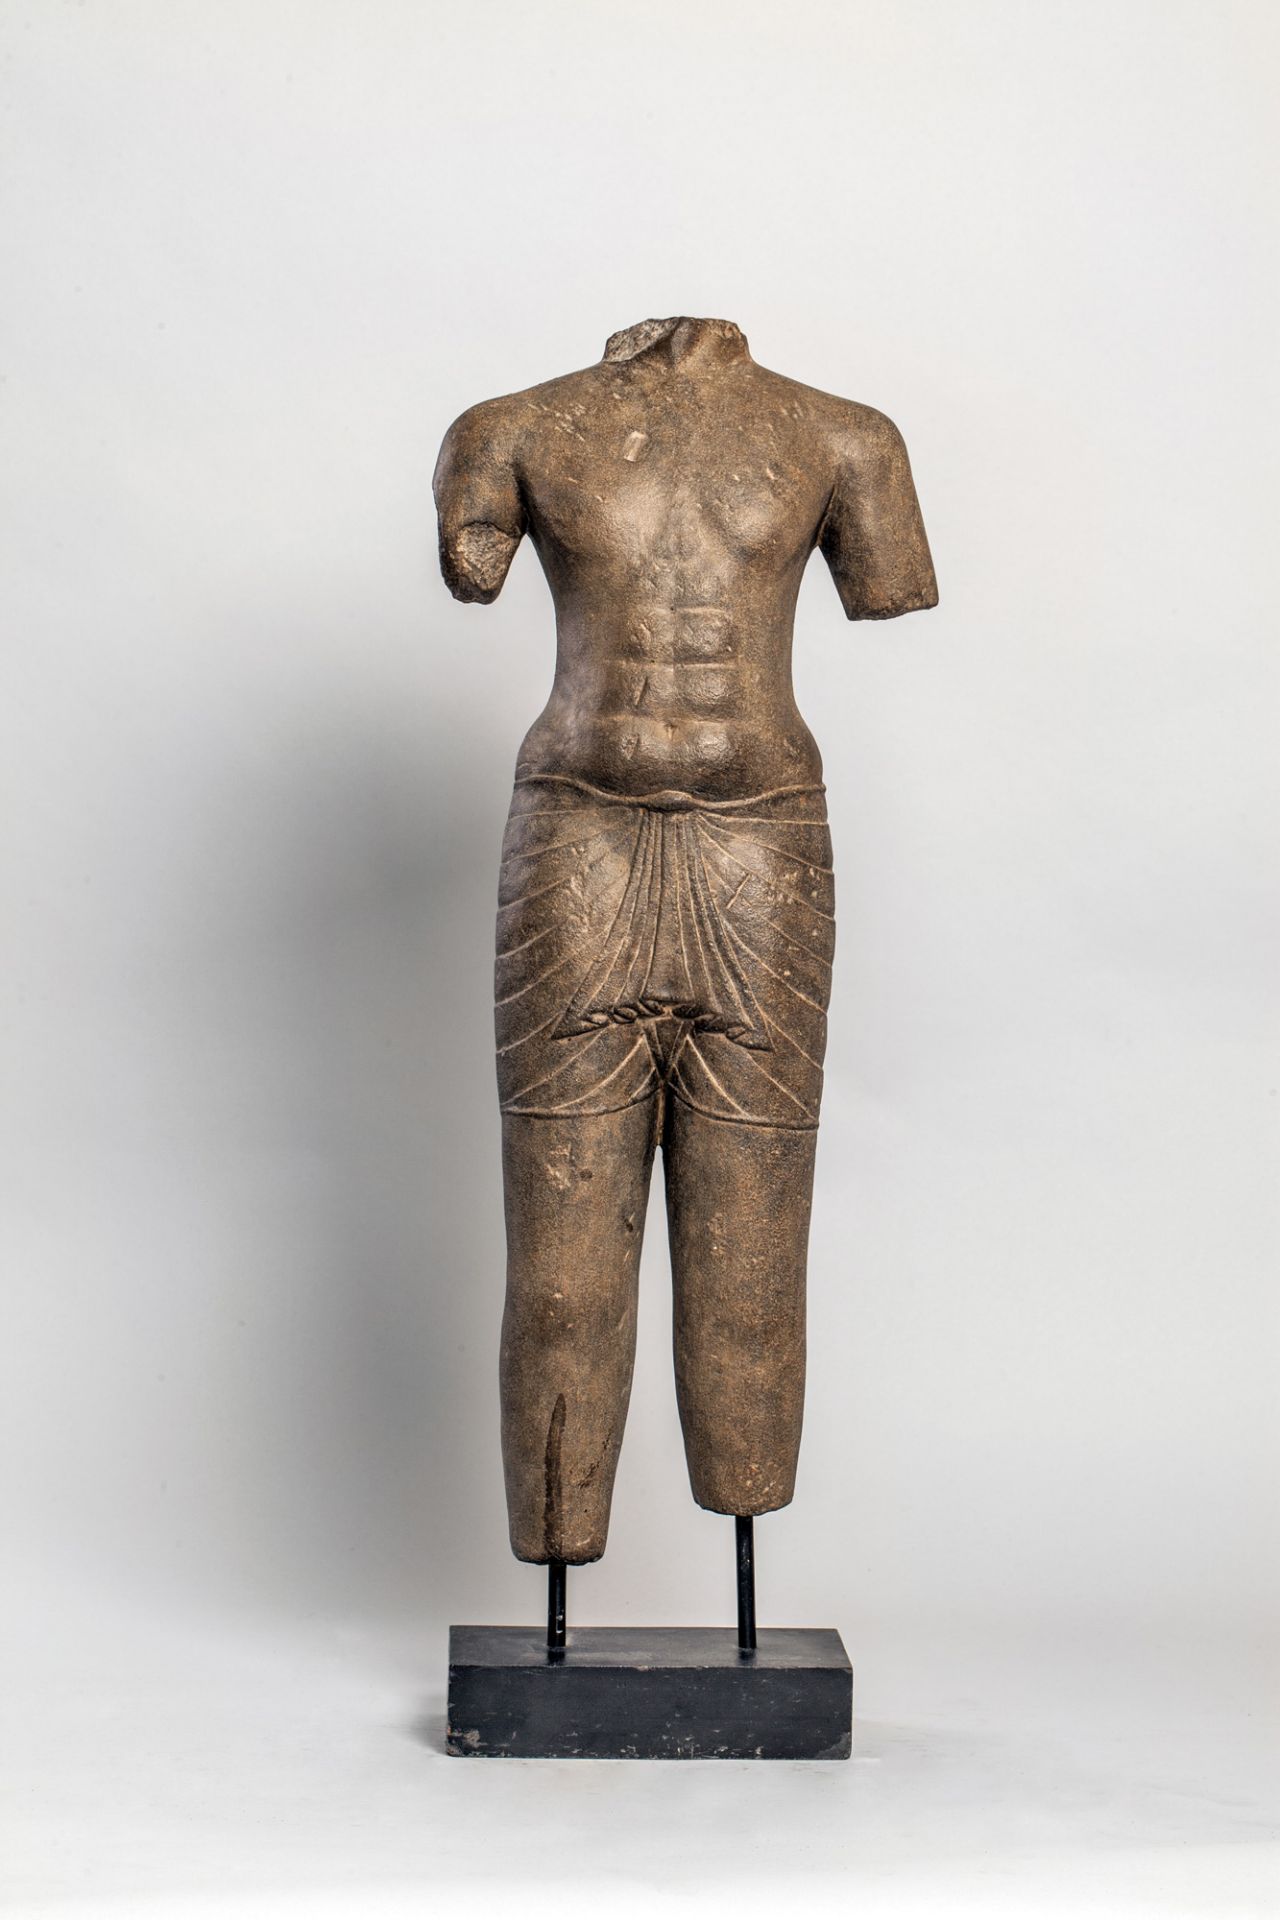 Torse de divinité masculine, Shiva ou Vishnu, au modelé juvénile et athlétique, vêtu d’un « Sampot »